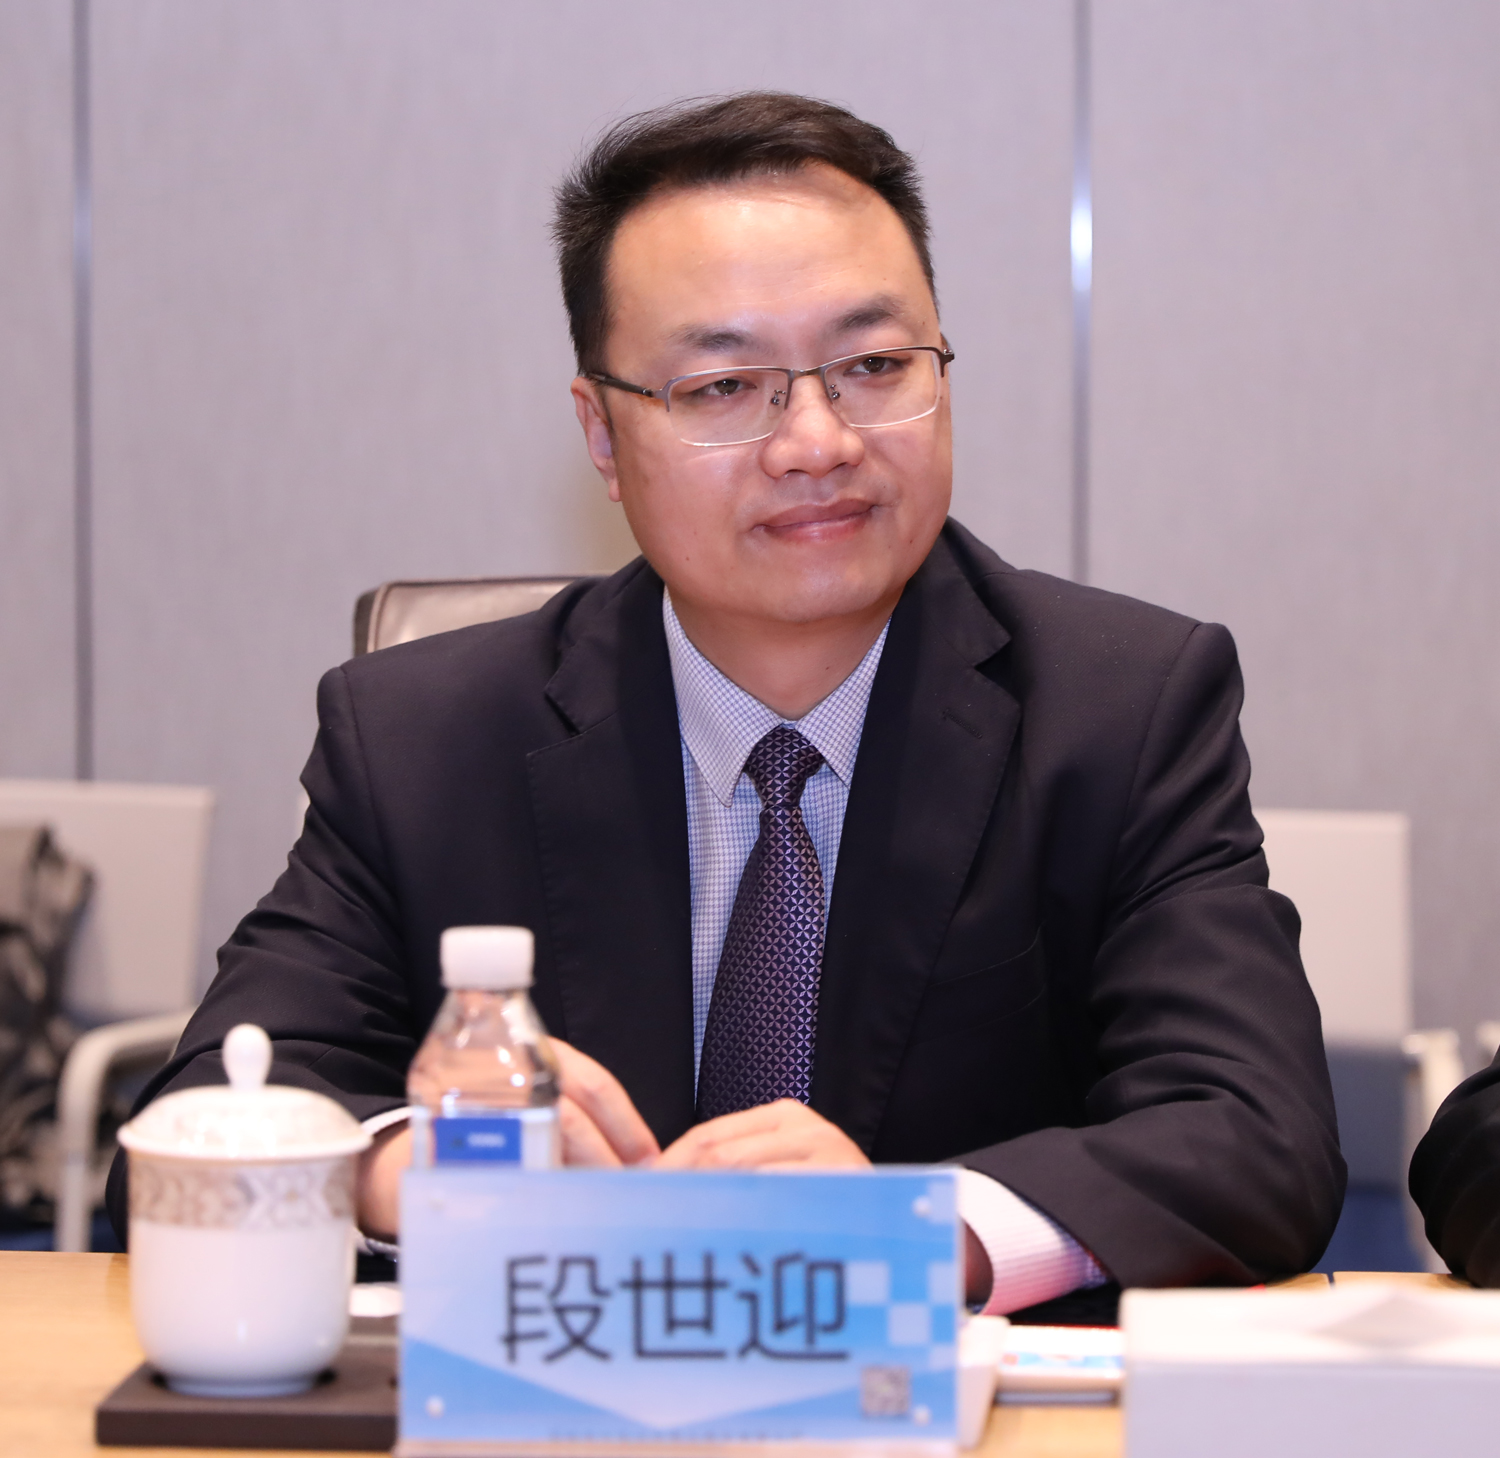 跨界整合 共謀發展丨白金酒公司參訪深圳天安駿業投資發展集團